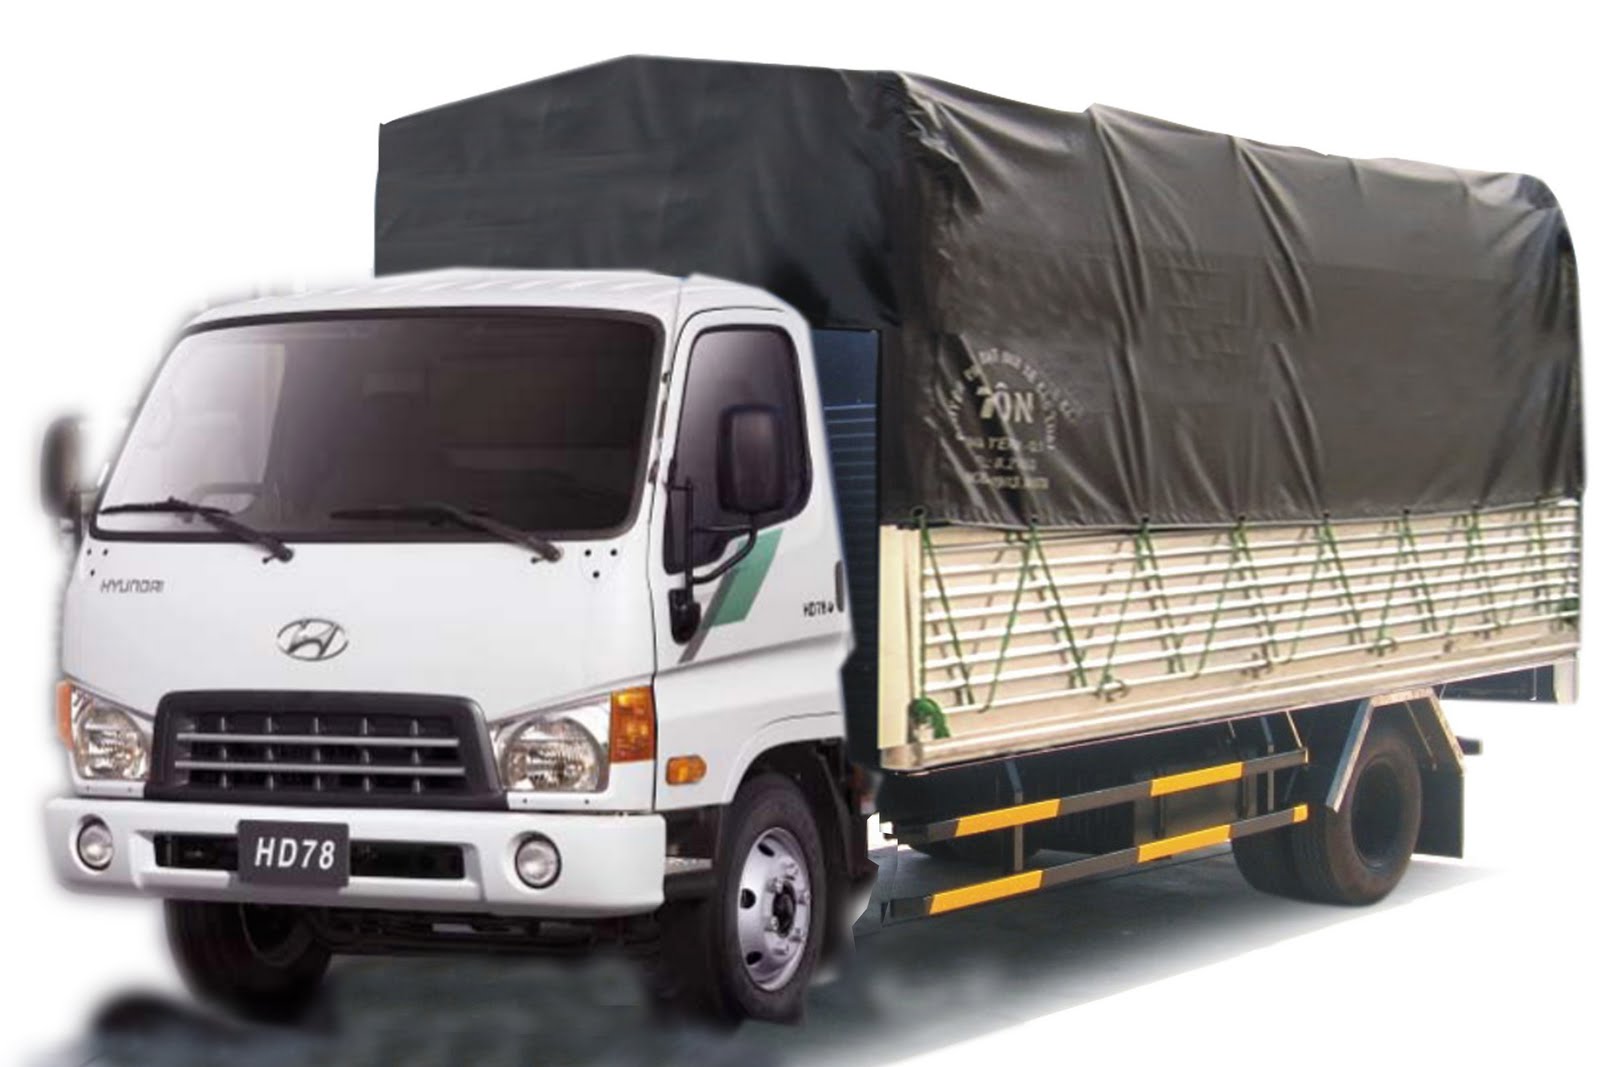 Giá cho thuê xe tải 5 tấn chở hàng Hà Nội 